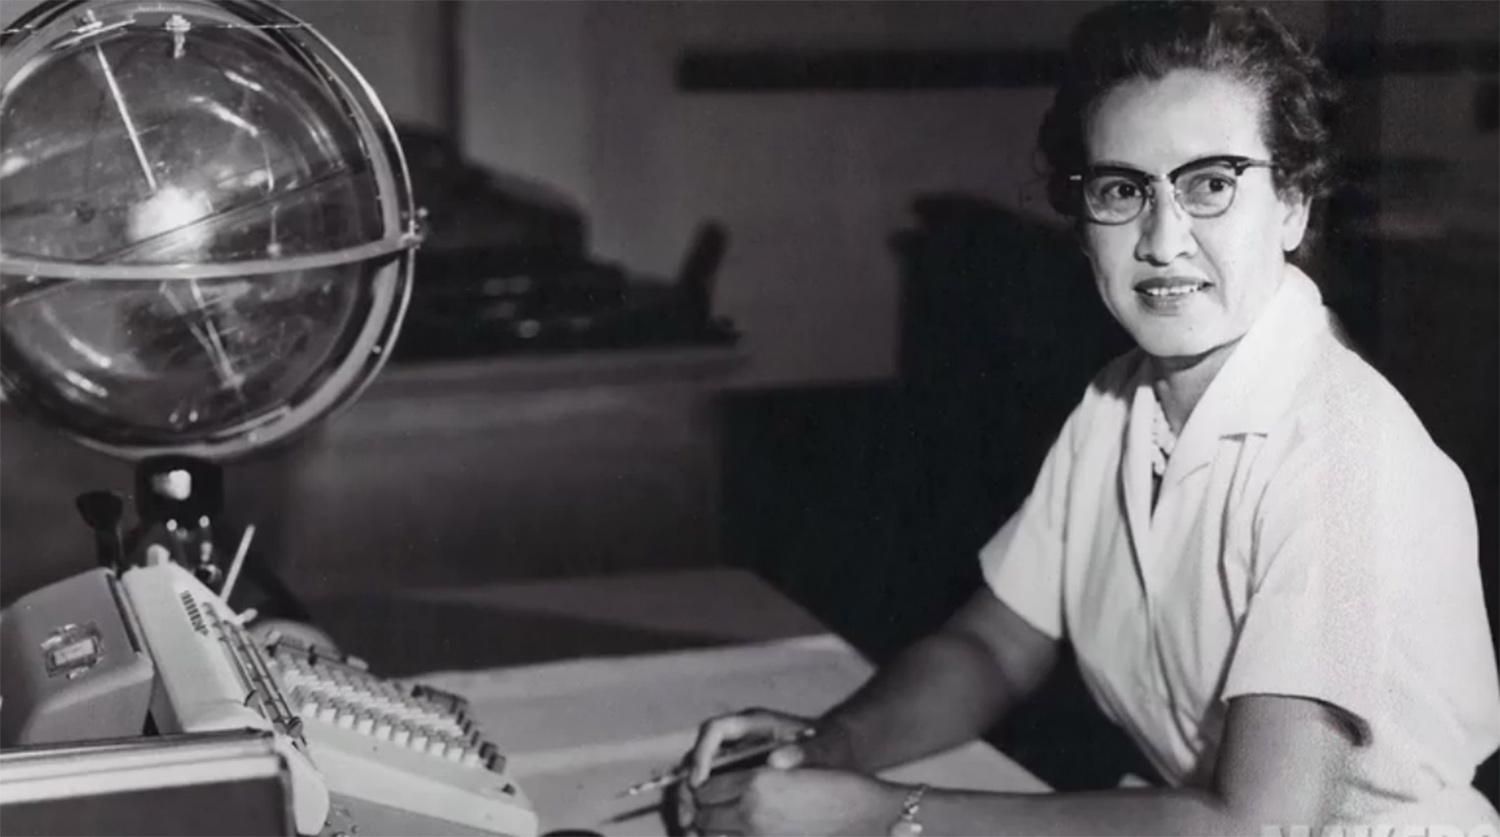 Кетрин Джонсон умерла 24.02.2020 – биография математика NASA